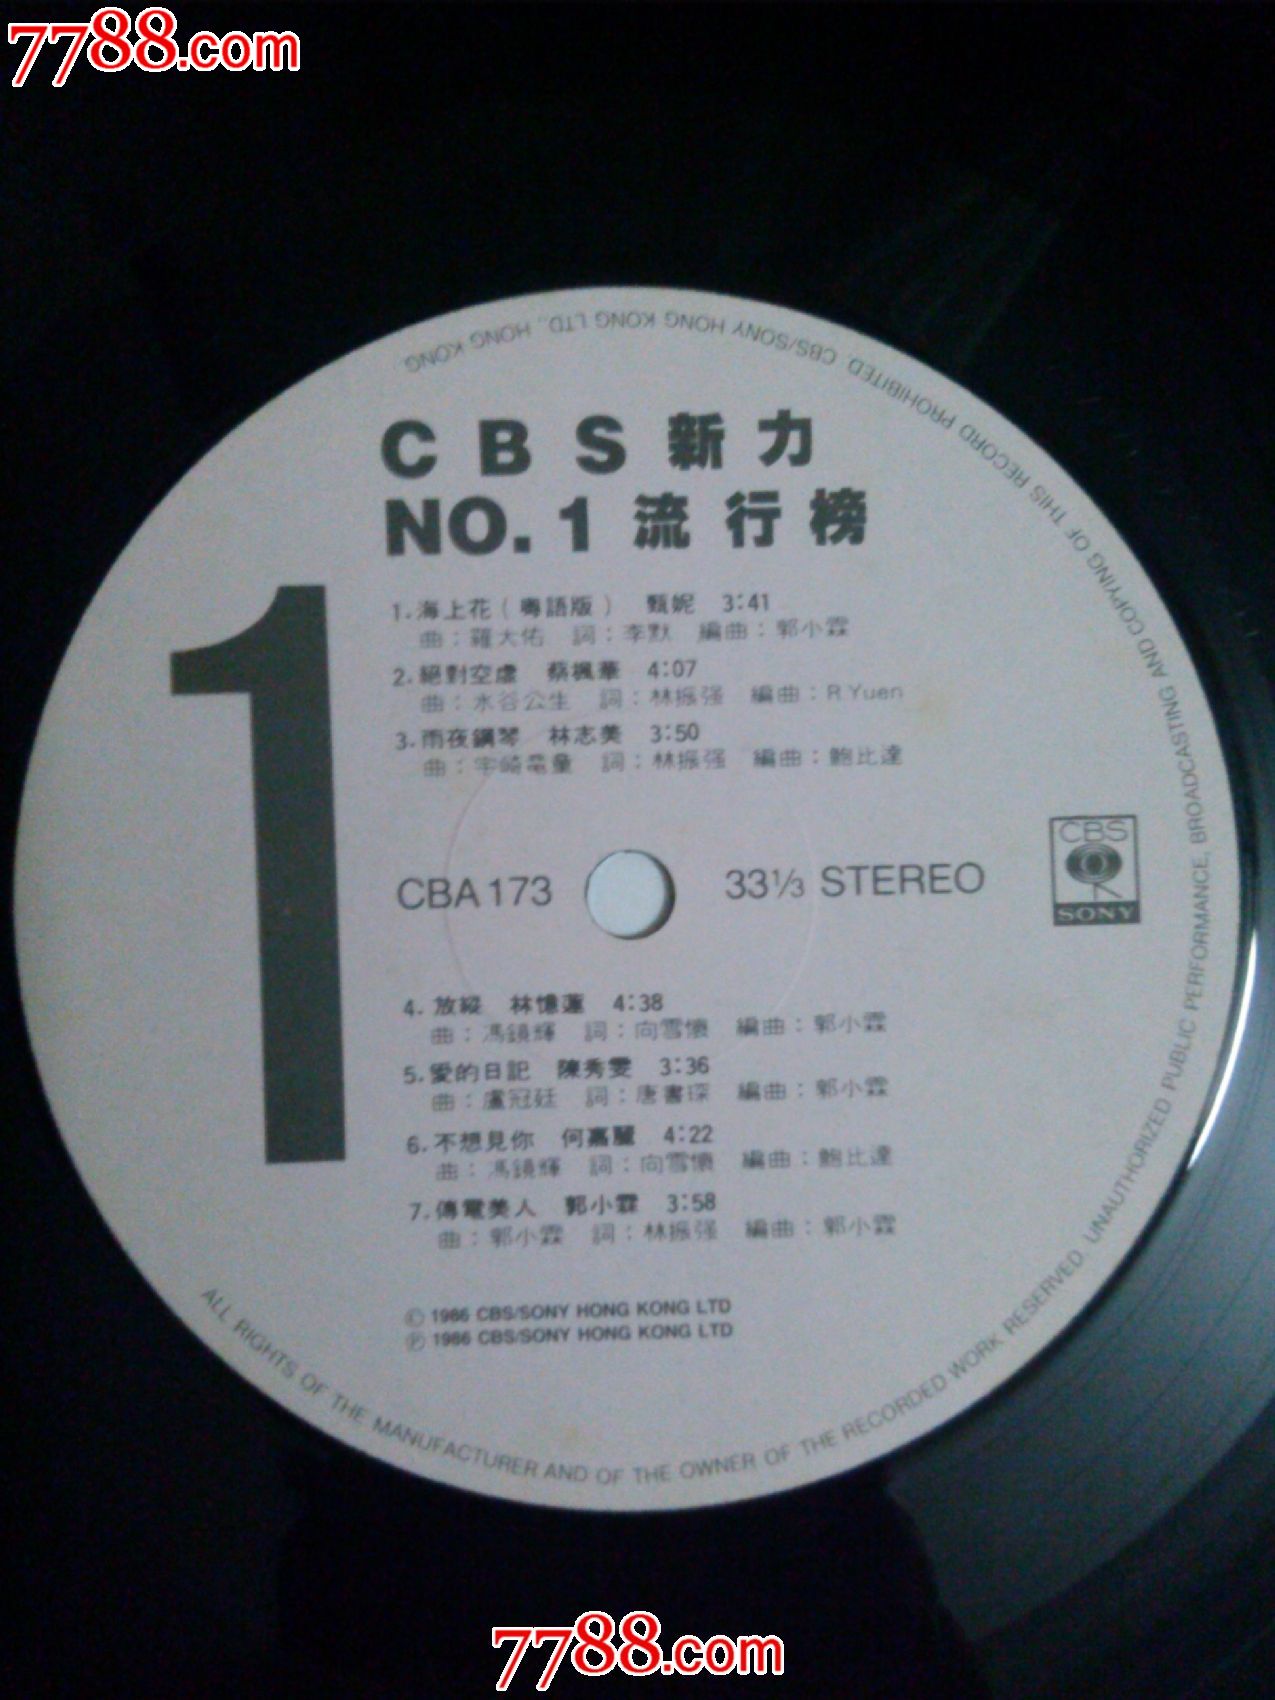 黑胶唱片LP【CBS新力NO.1流行榜】*版